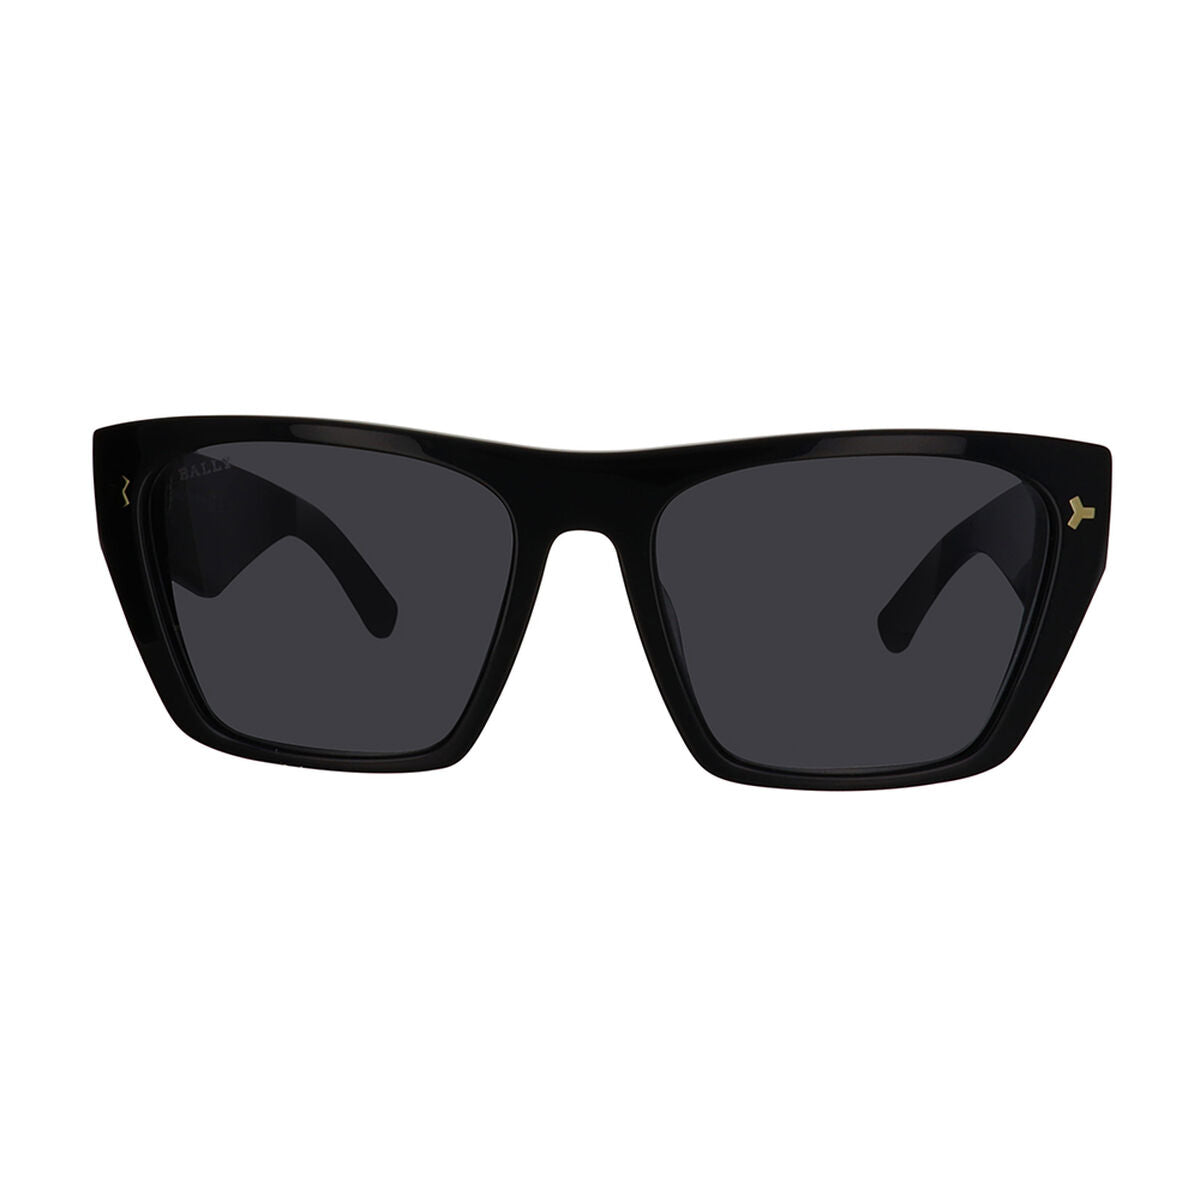 Kaufe Damensonnenbrille Bally BY0109_H-01A-55 bei AWK Flagship um € 124.00